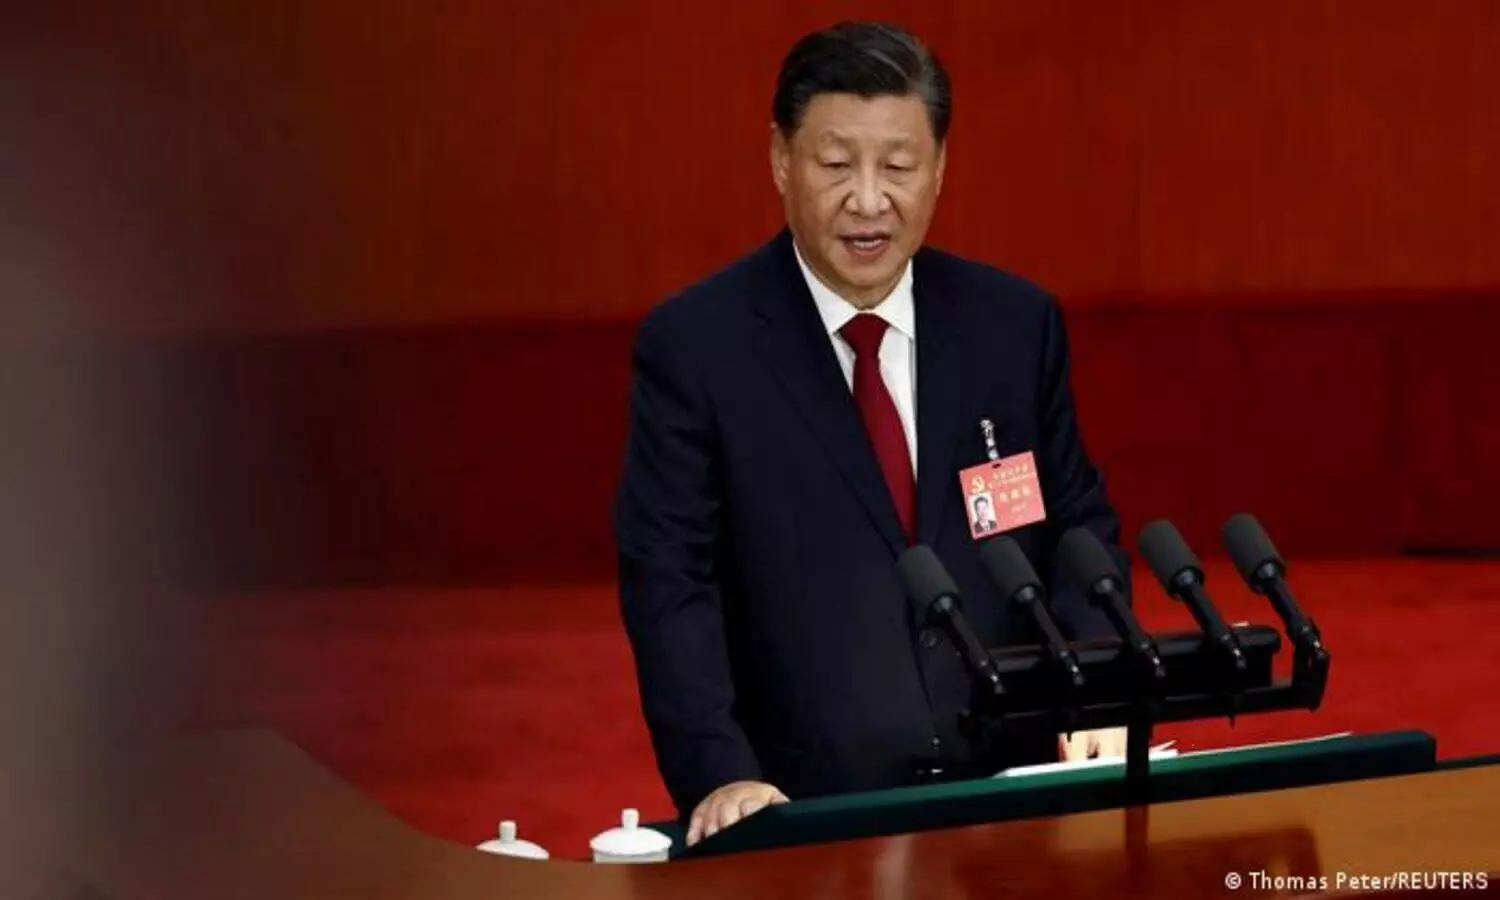 Xi Jinping news